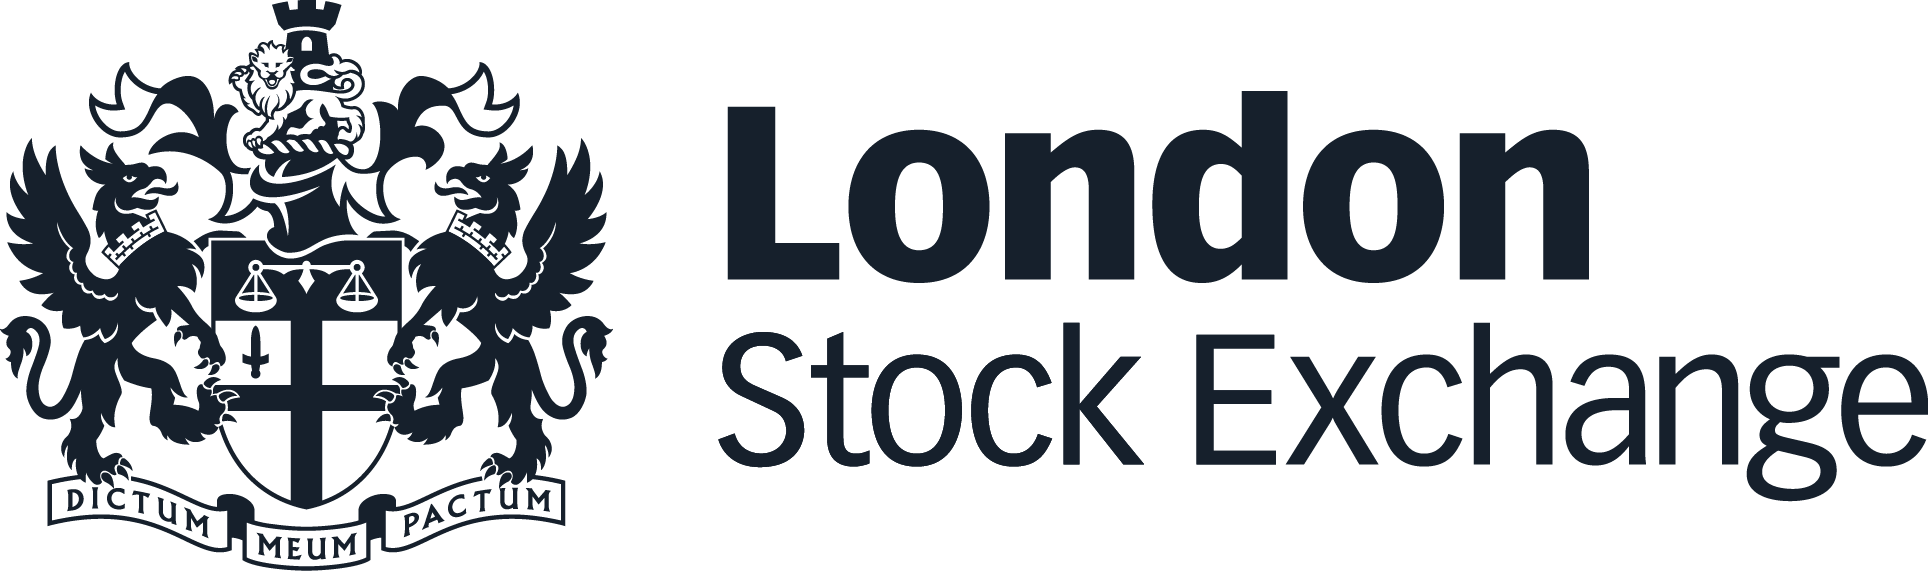 Display Image of London Stock Exchange